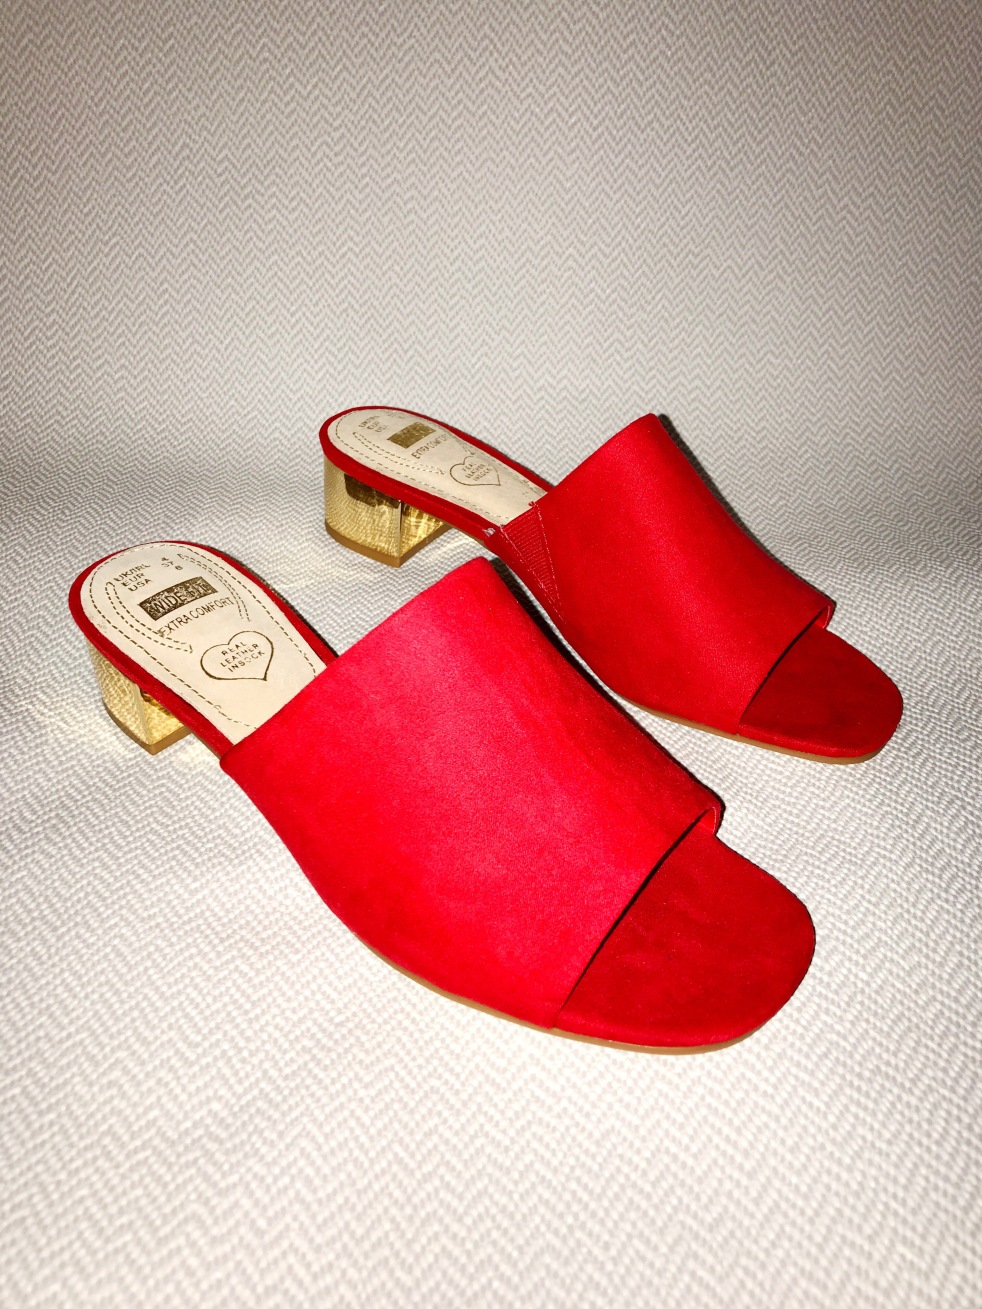 Red heel sliders